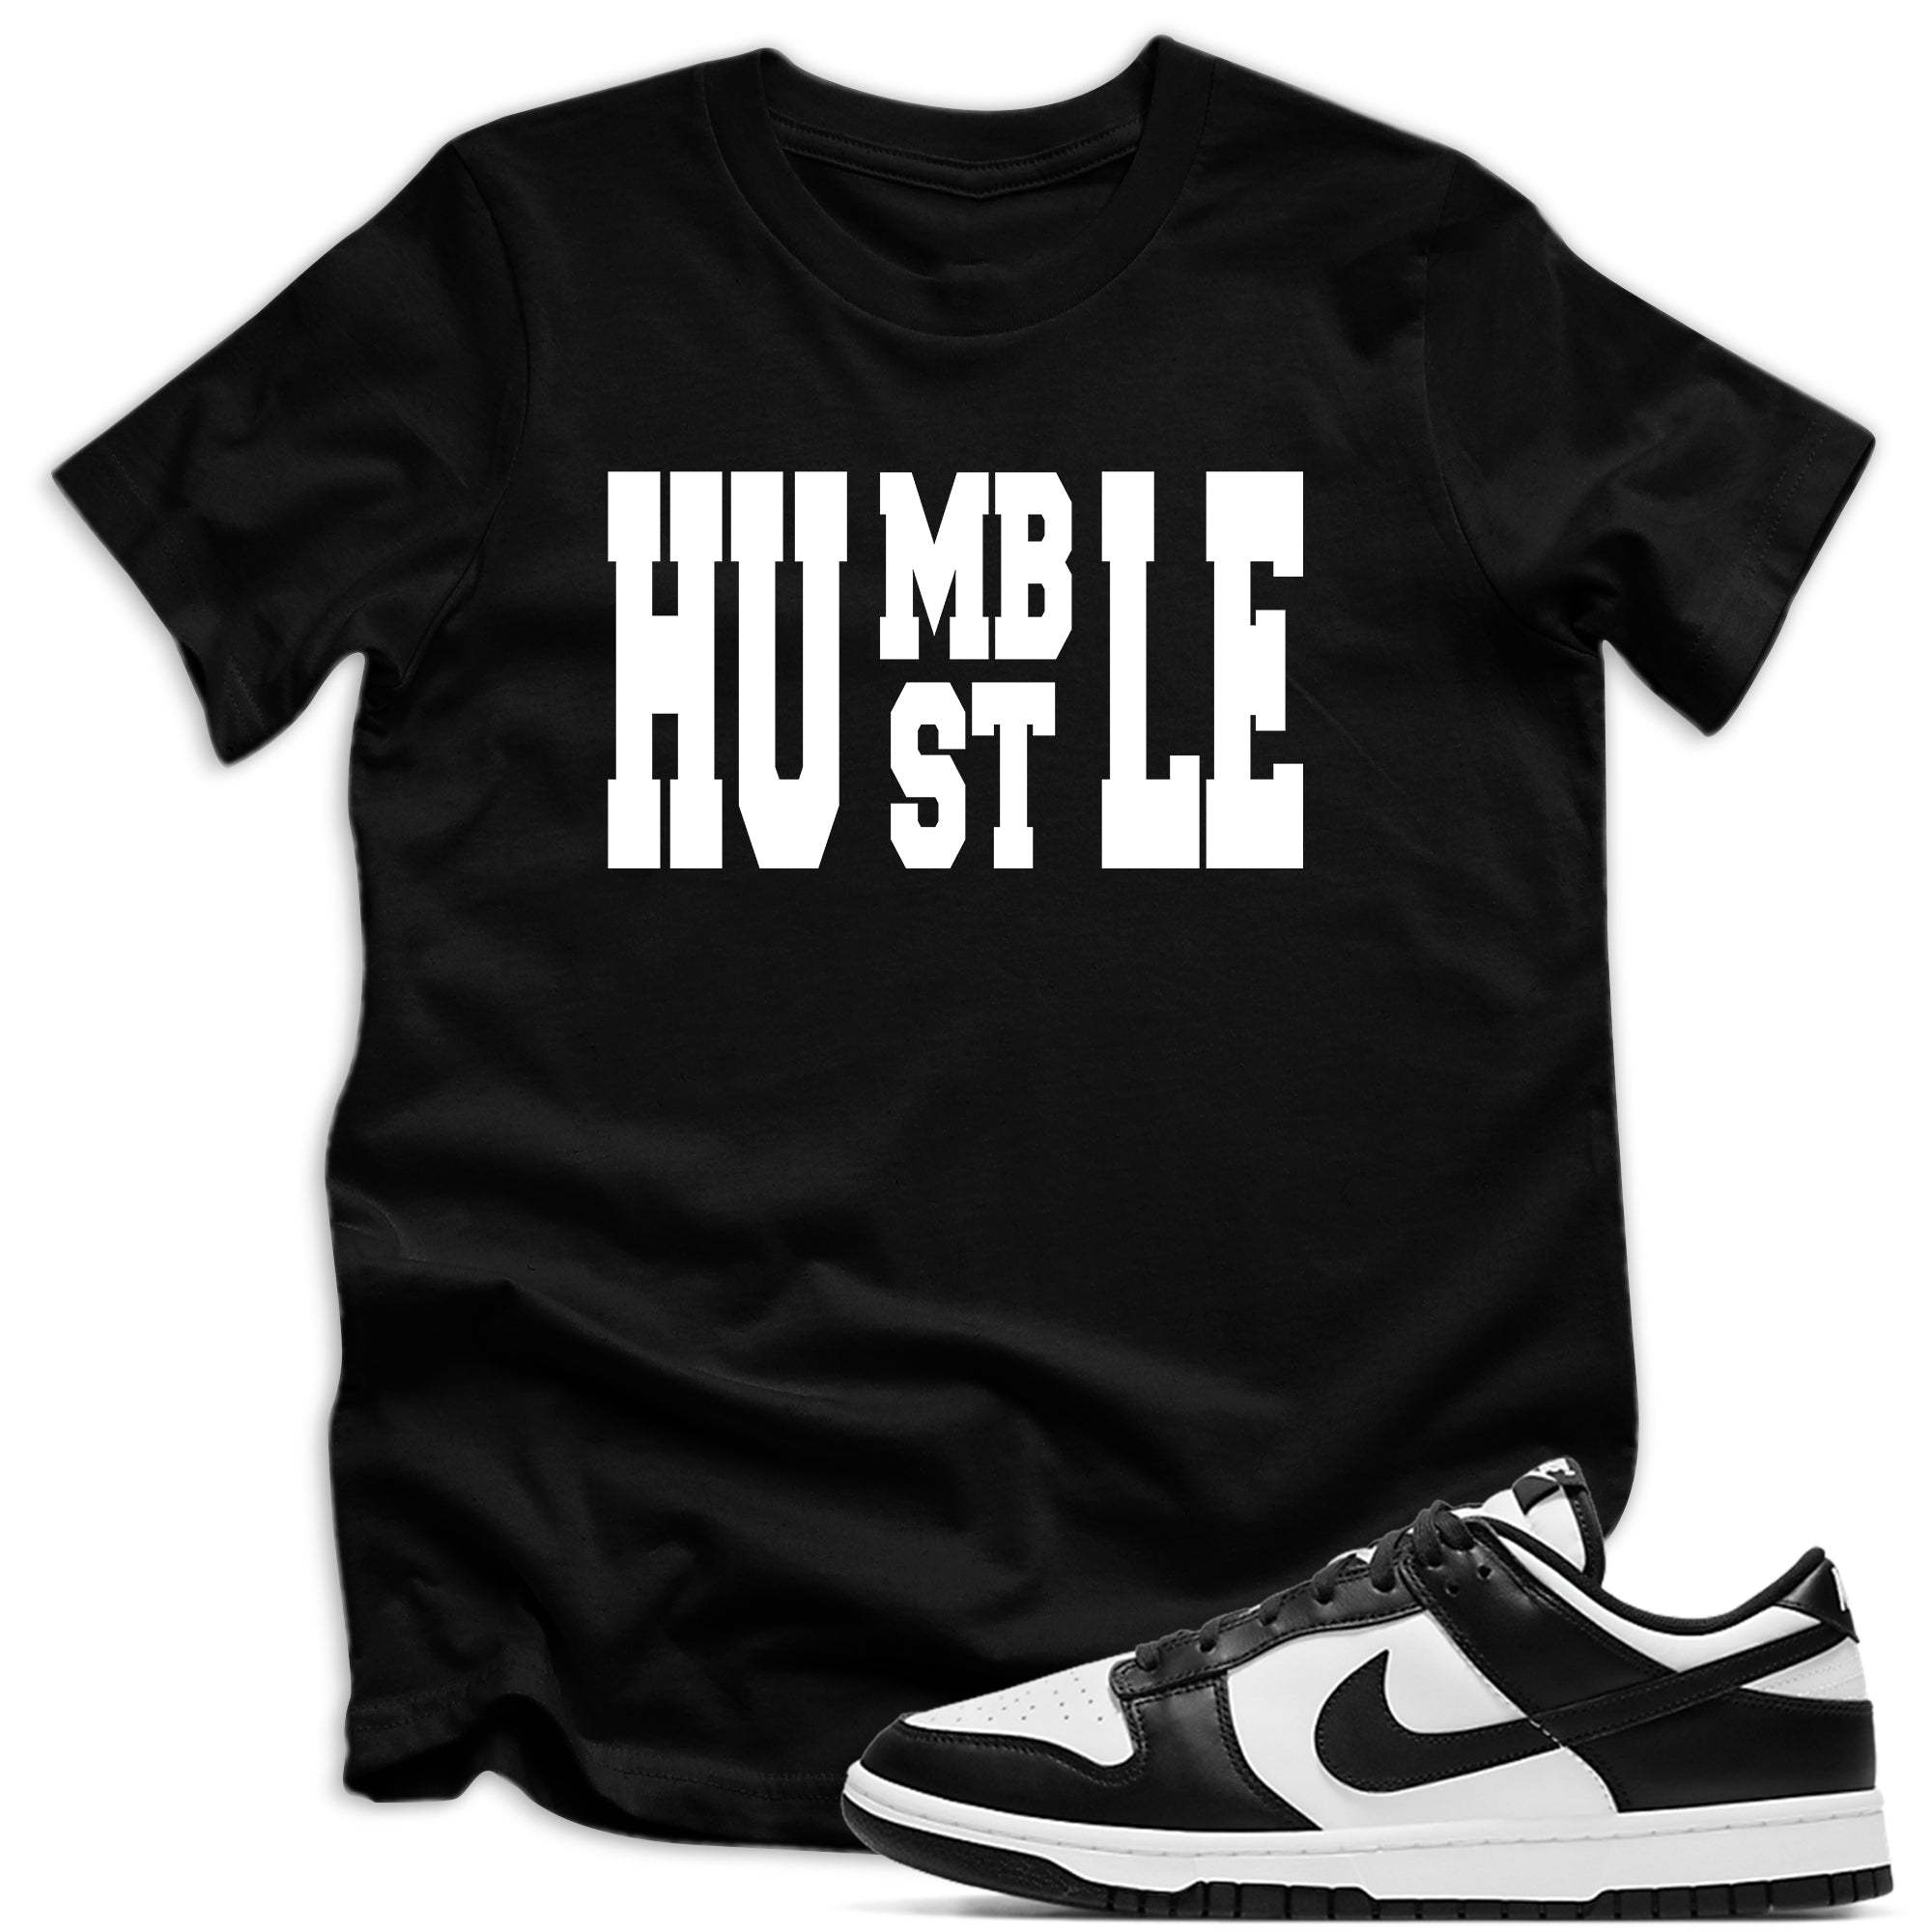 Humble Hustle Shirt Nike Dunks Low Retro White Black photo